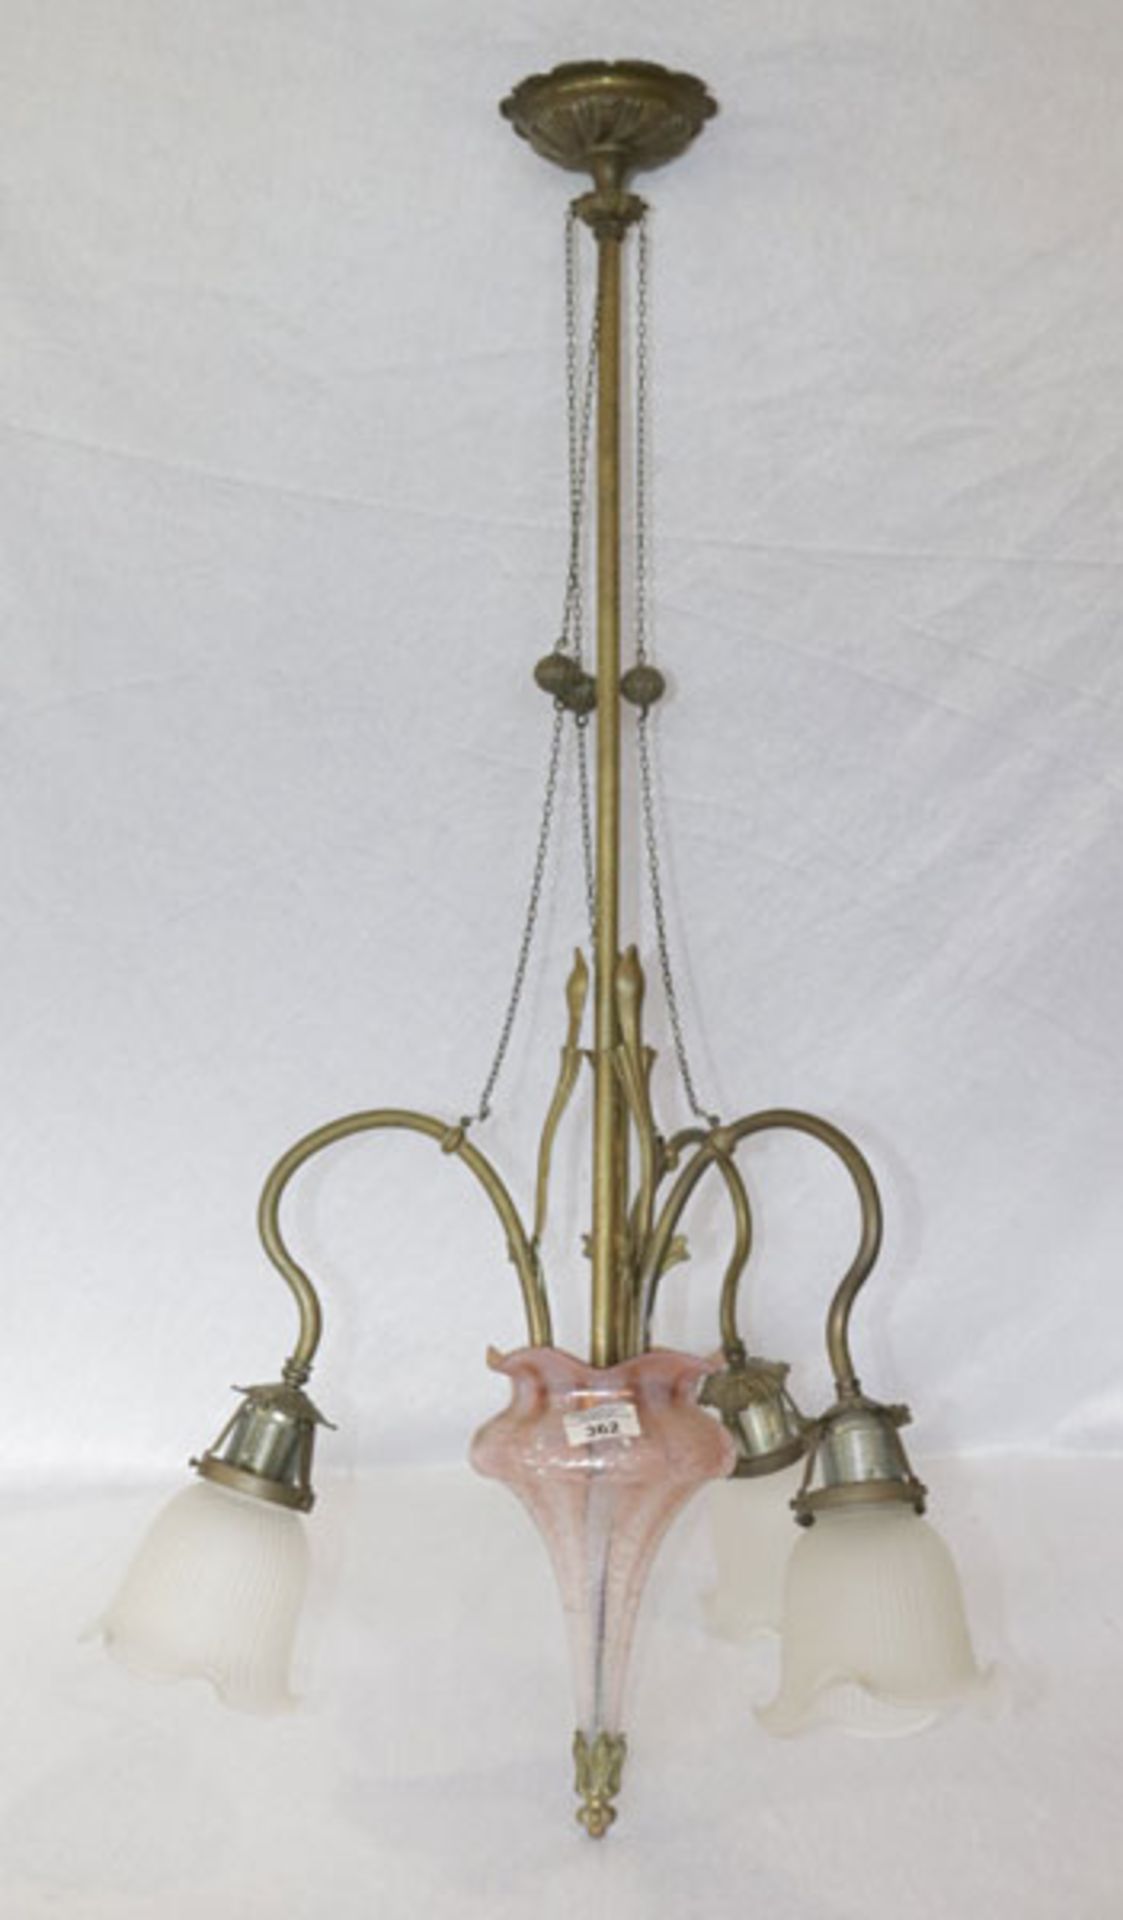 Metall/Glas Hängelampe, 3-armig mit 3 Glasblütenschirmchen, H 116 cm, D ca. 66 cm, Alters- und